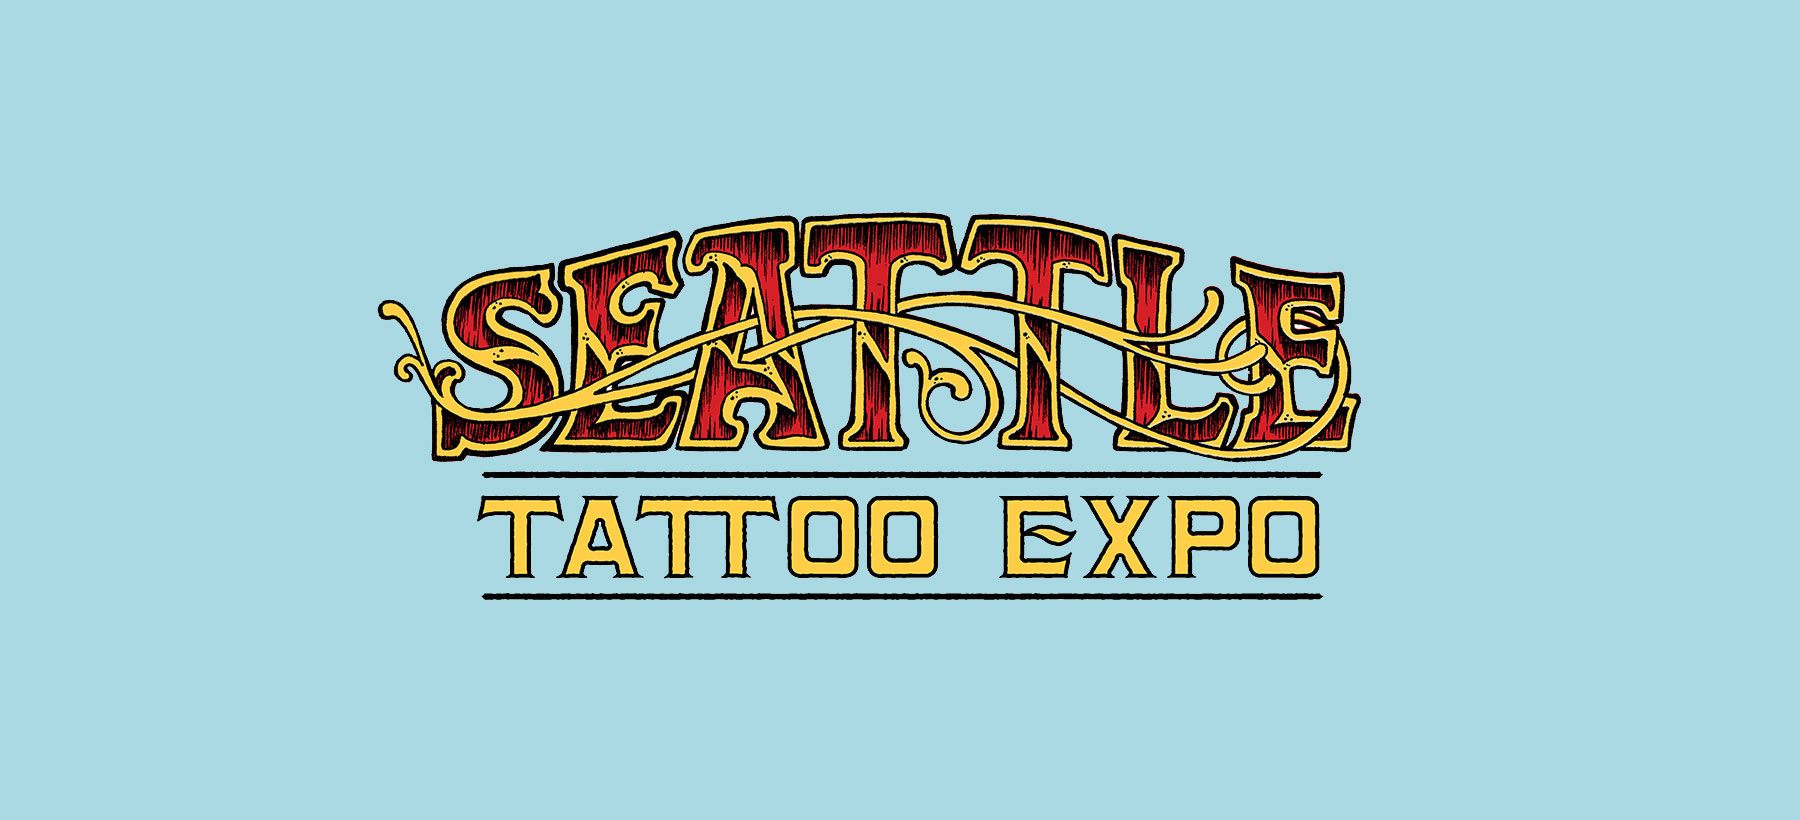 Seattle Tattoo Expo